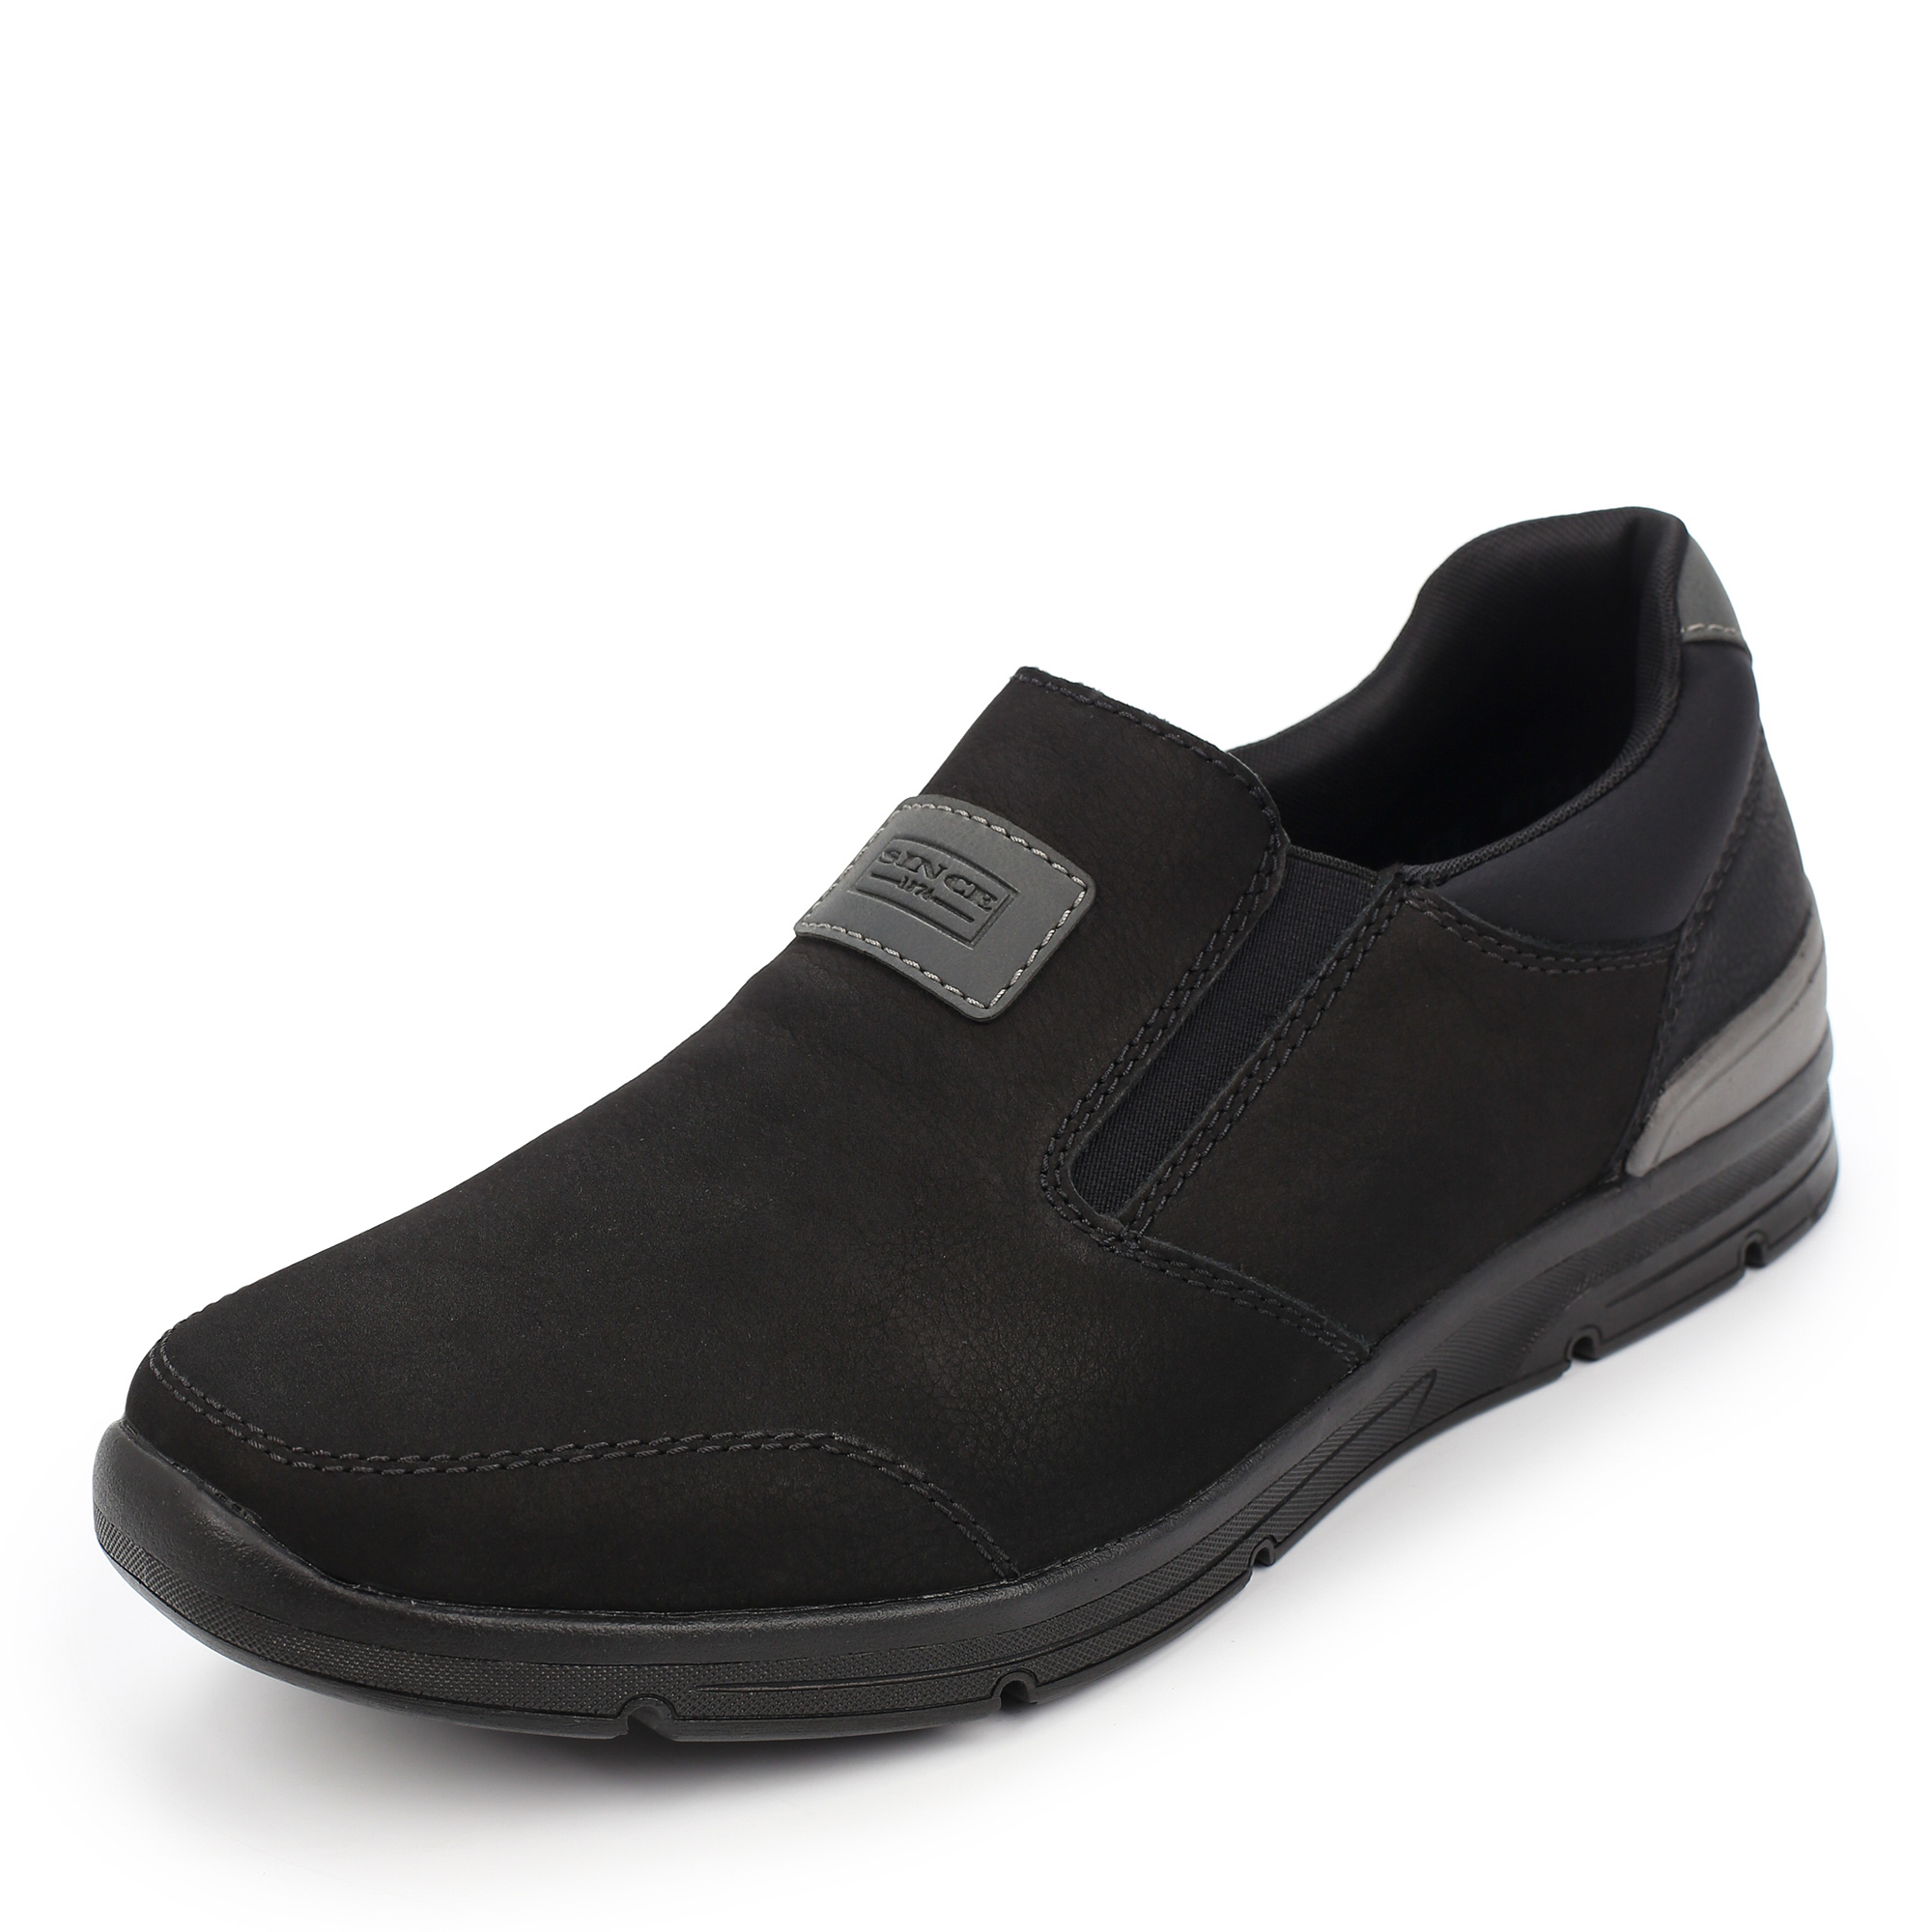 Туфли/полуботинки Rieker 16456-00, цвет черный, размер 44 - фото 2